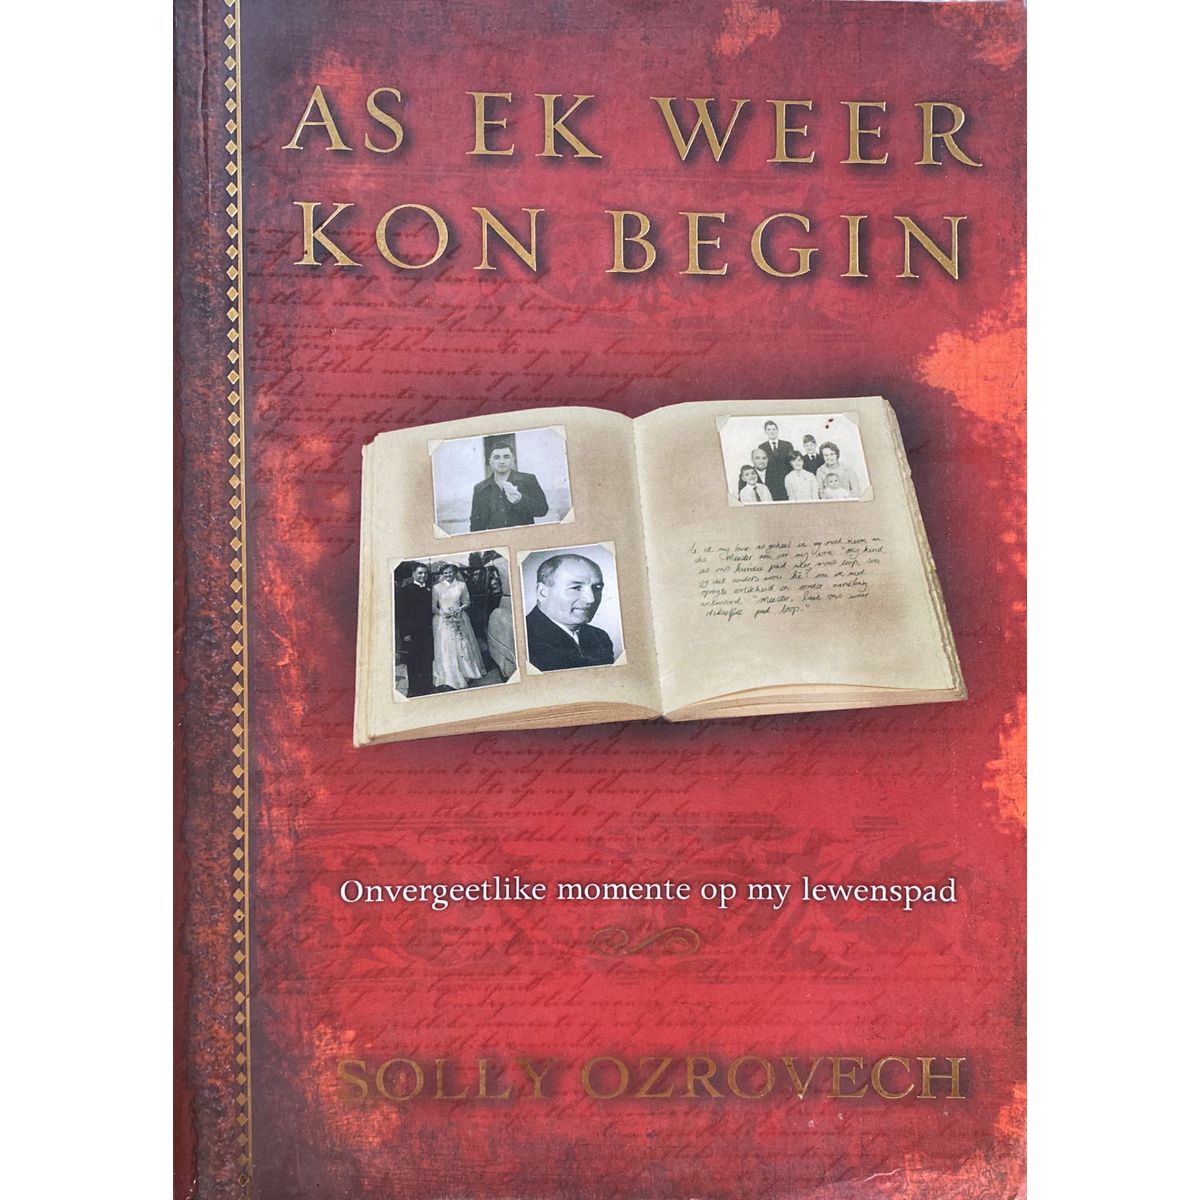 ISBN: 9781770001527 / 1770001522 - As Ek Weer Kon Begin by Solly Ozrovech [2006]